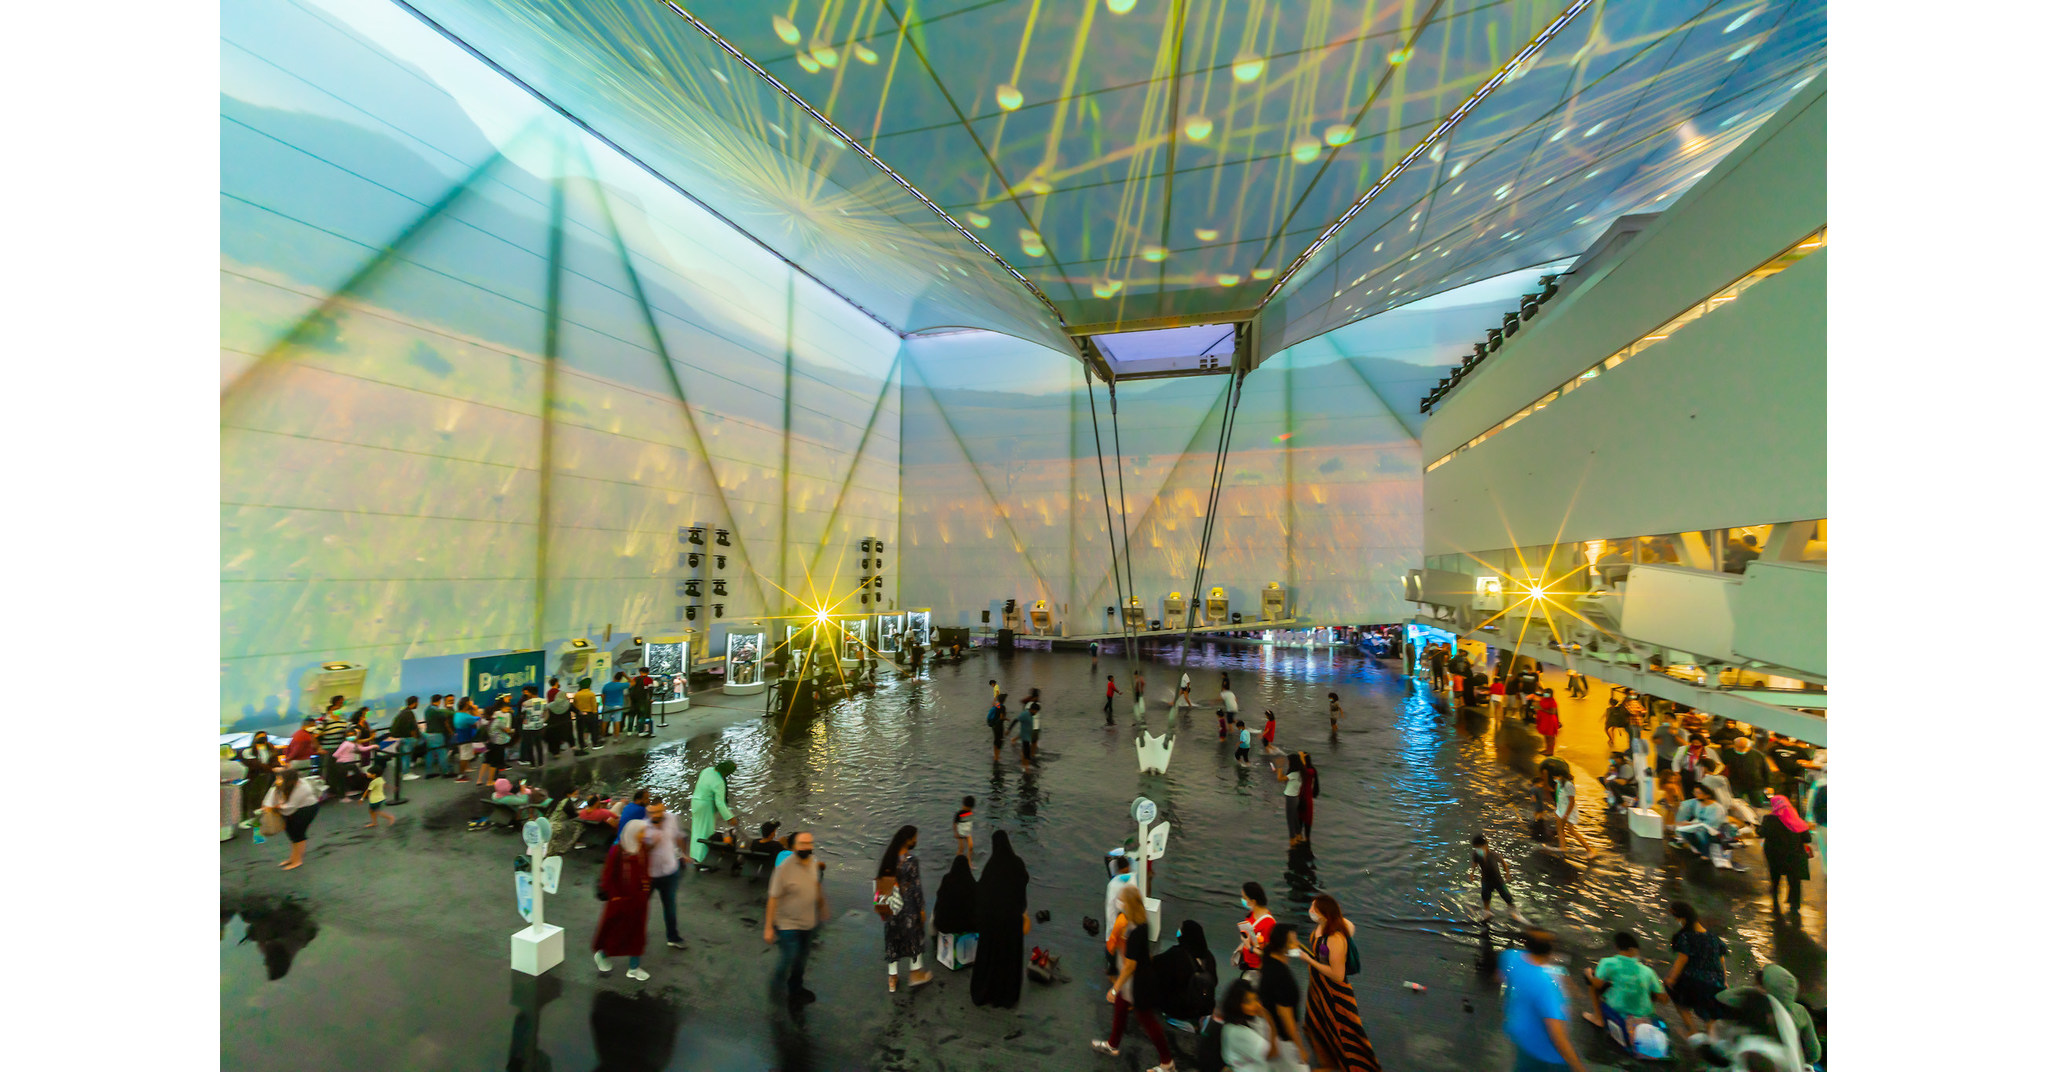 Exhibiendo la conservación del agua, la Exposición del Pabellón Brasileño llegó a 2 millones de visitantes en Dubai.